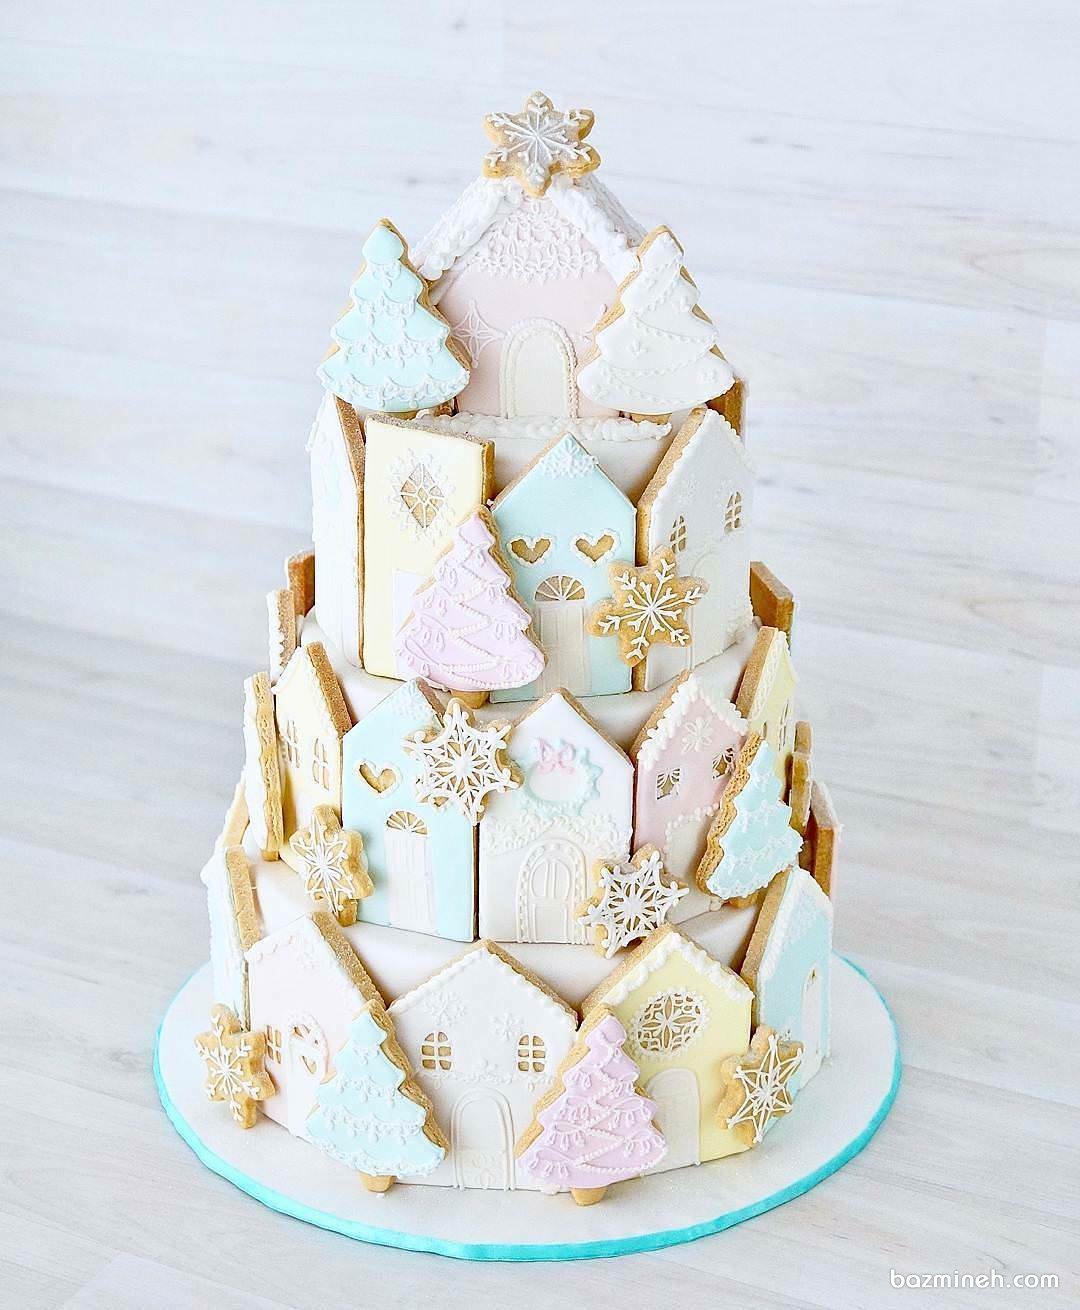 کیک چند طبقه جشن تولد کودک با تم زمستانی تزیین شده با کوکی های ریزه میزه